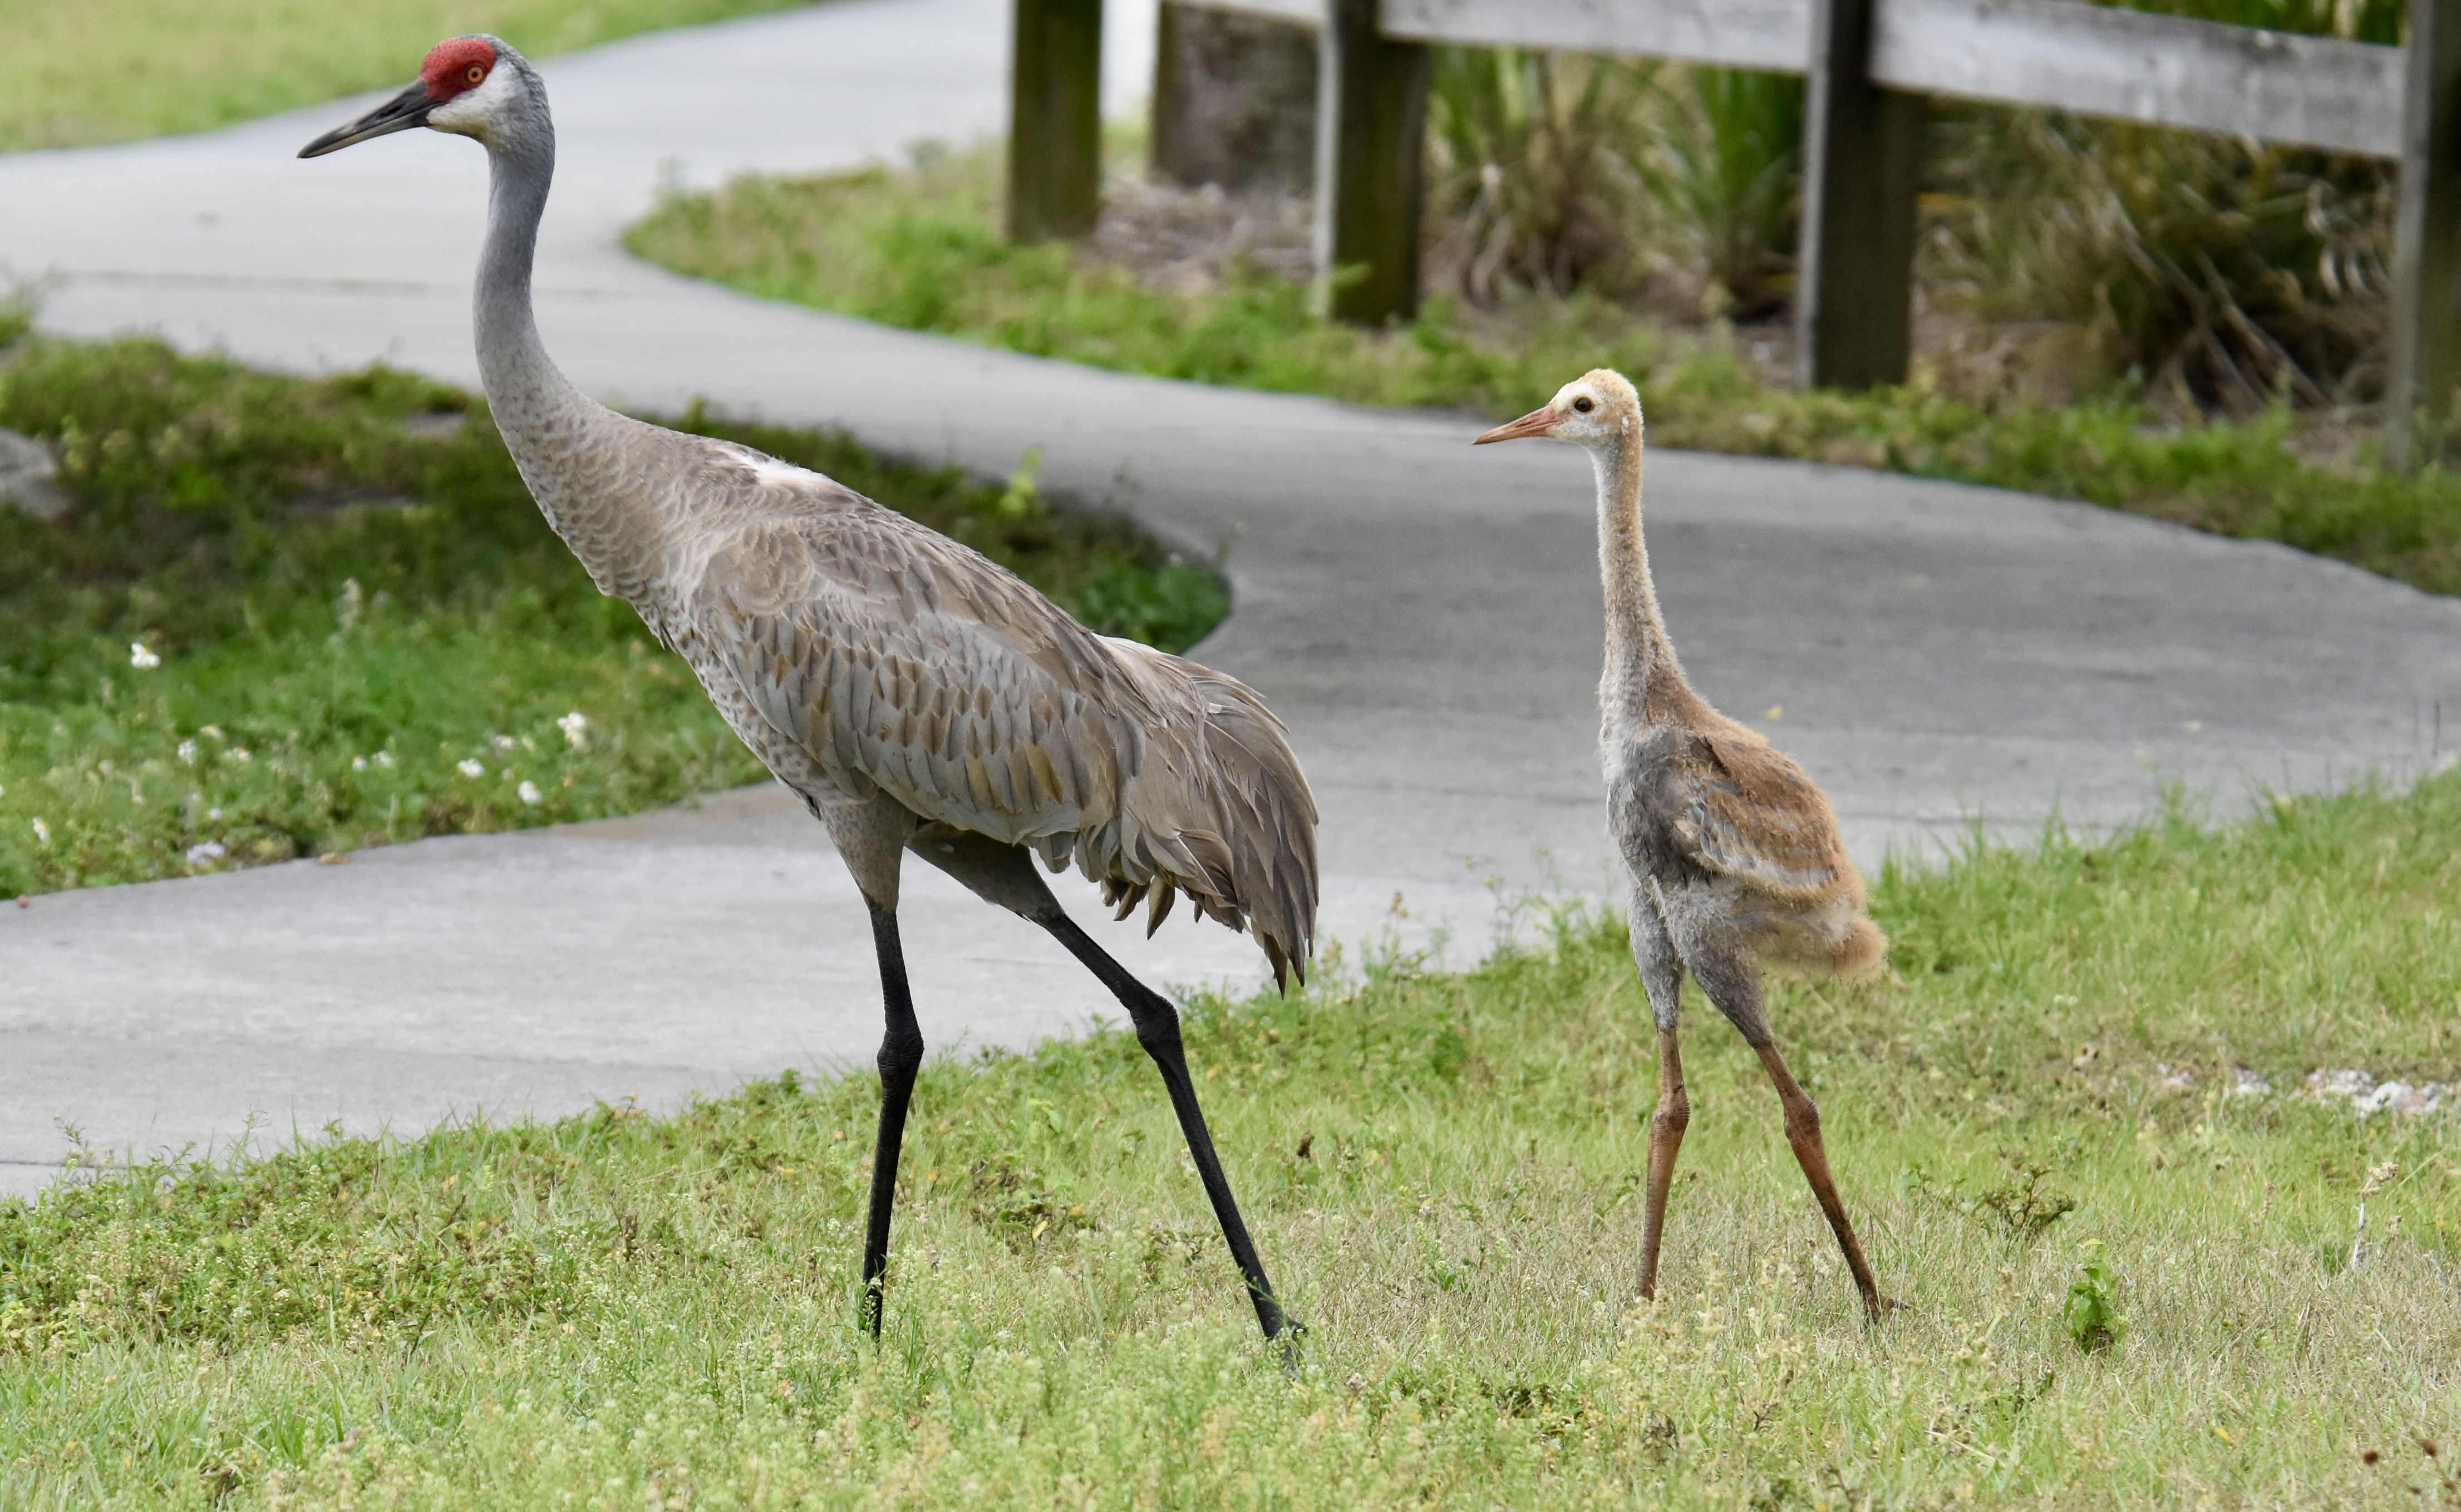 Sandhill cranes near a walking path.